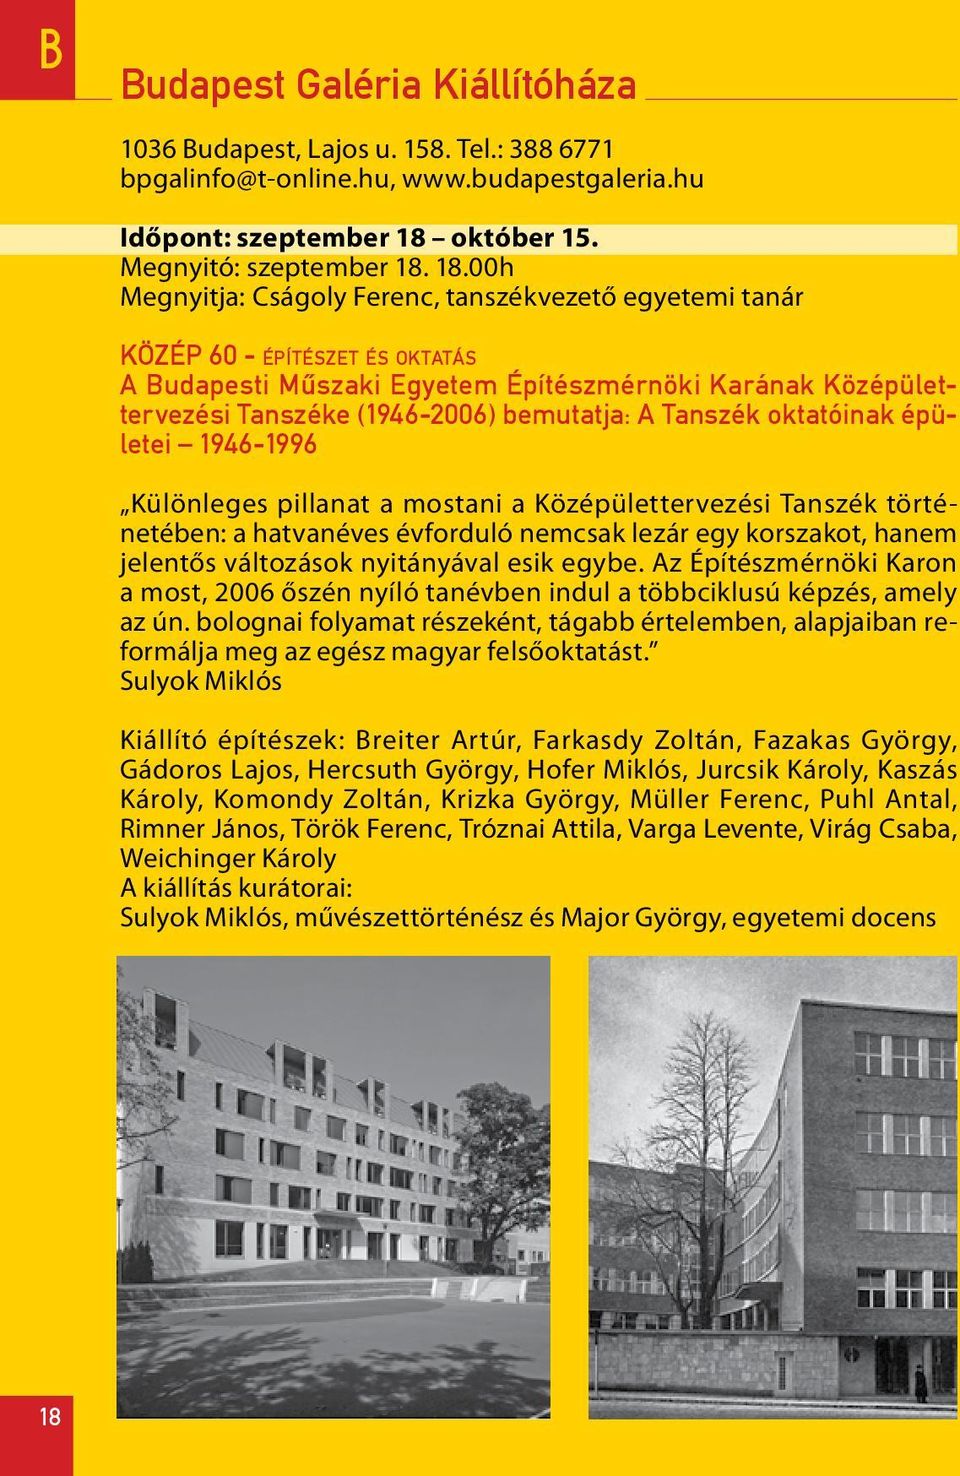 18.00h Megnyitja: Cságoly Ferenc, tanszékvezető egyetemi tanár KÖZÉP 60 - építészet és oktatás A Budapesti Mûszaki Egyetem Építészmérnöki Karának Középülettervezési Tanszéke (1946-2006) bemutatja: A